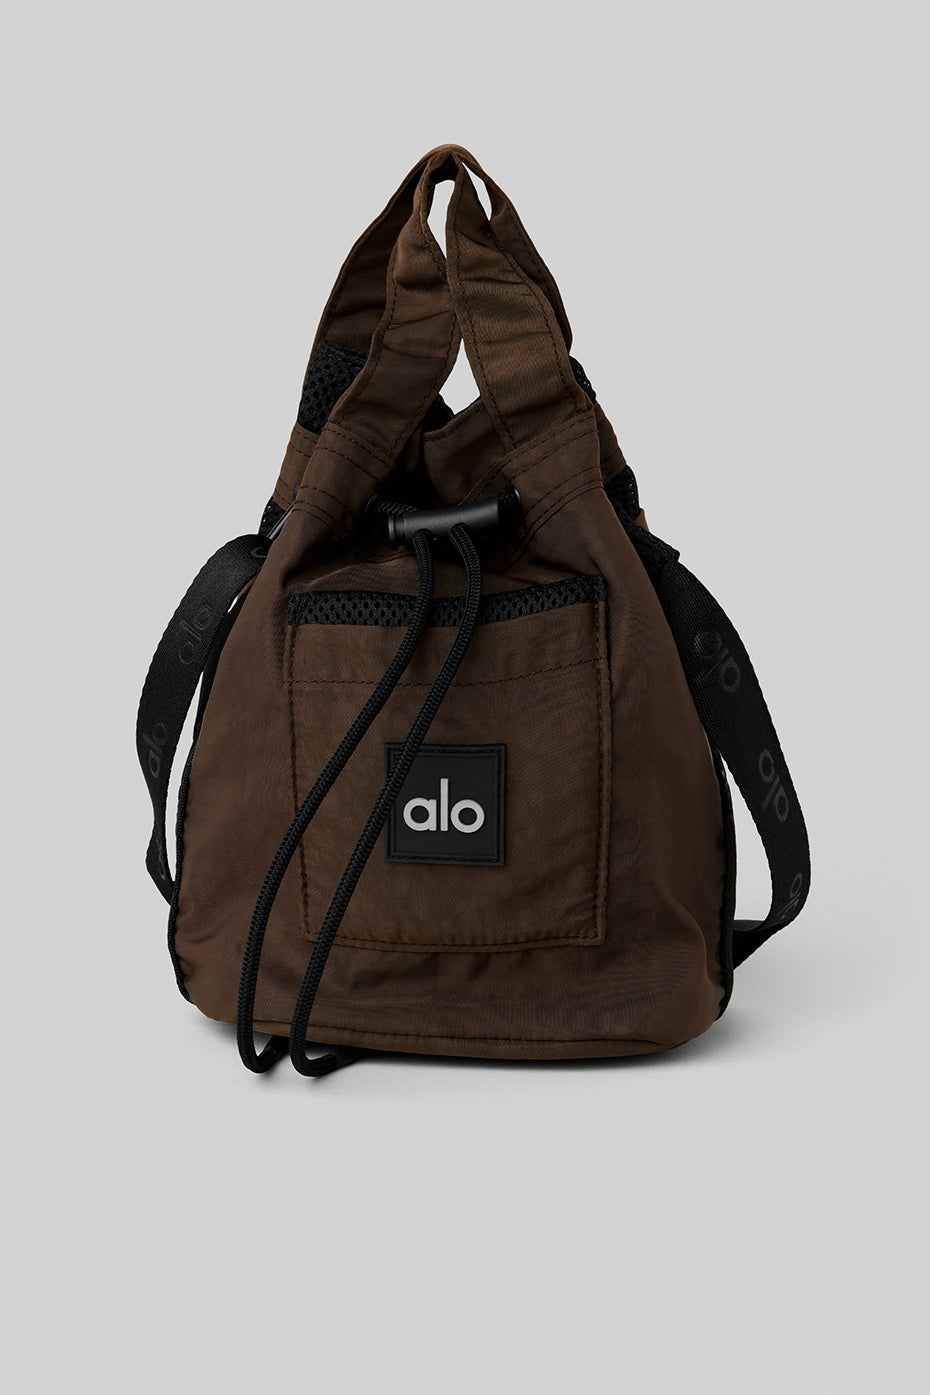 alibrands  Alo Yoga sports bags